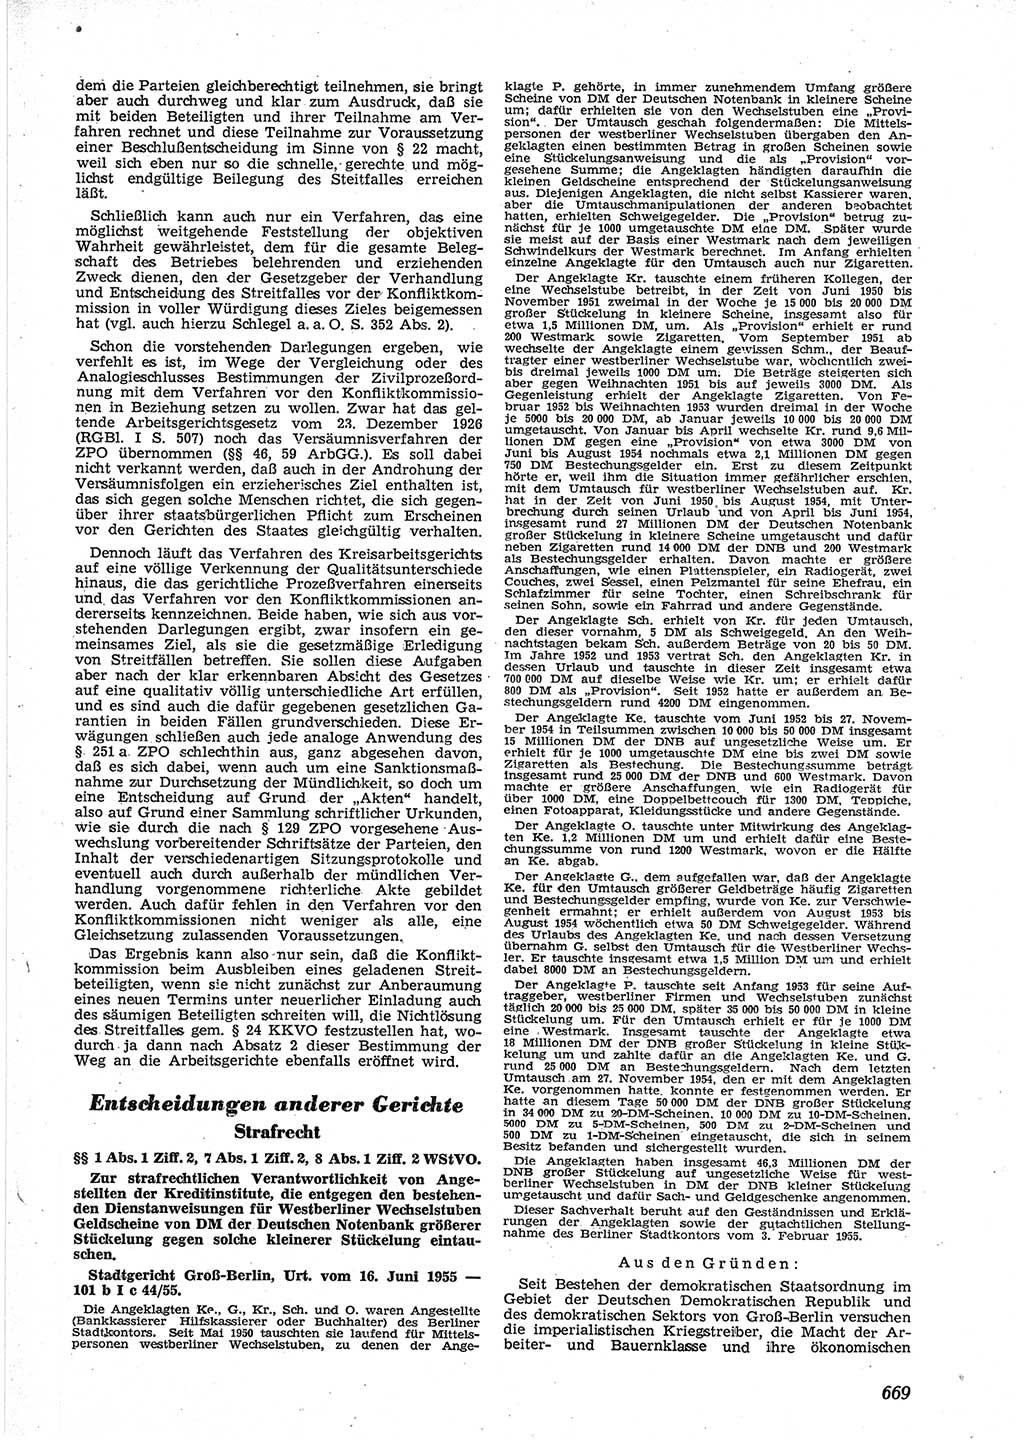 Neue Justiz (NJ), Zeitschrift für Recht und Rechtswissenschaft [Deutsche Demokratische Republik (DDR)], 9. Jahrgang 1955, Seite 669 (NJ DDR 1955, S. 669)